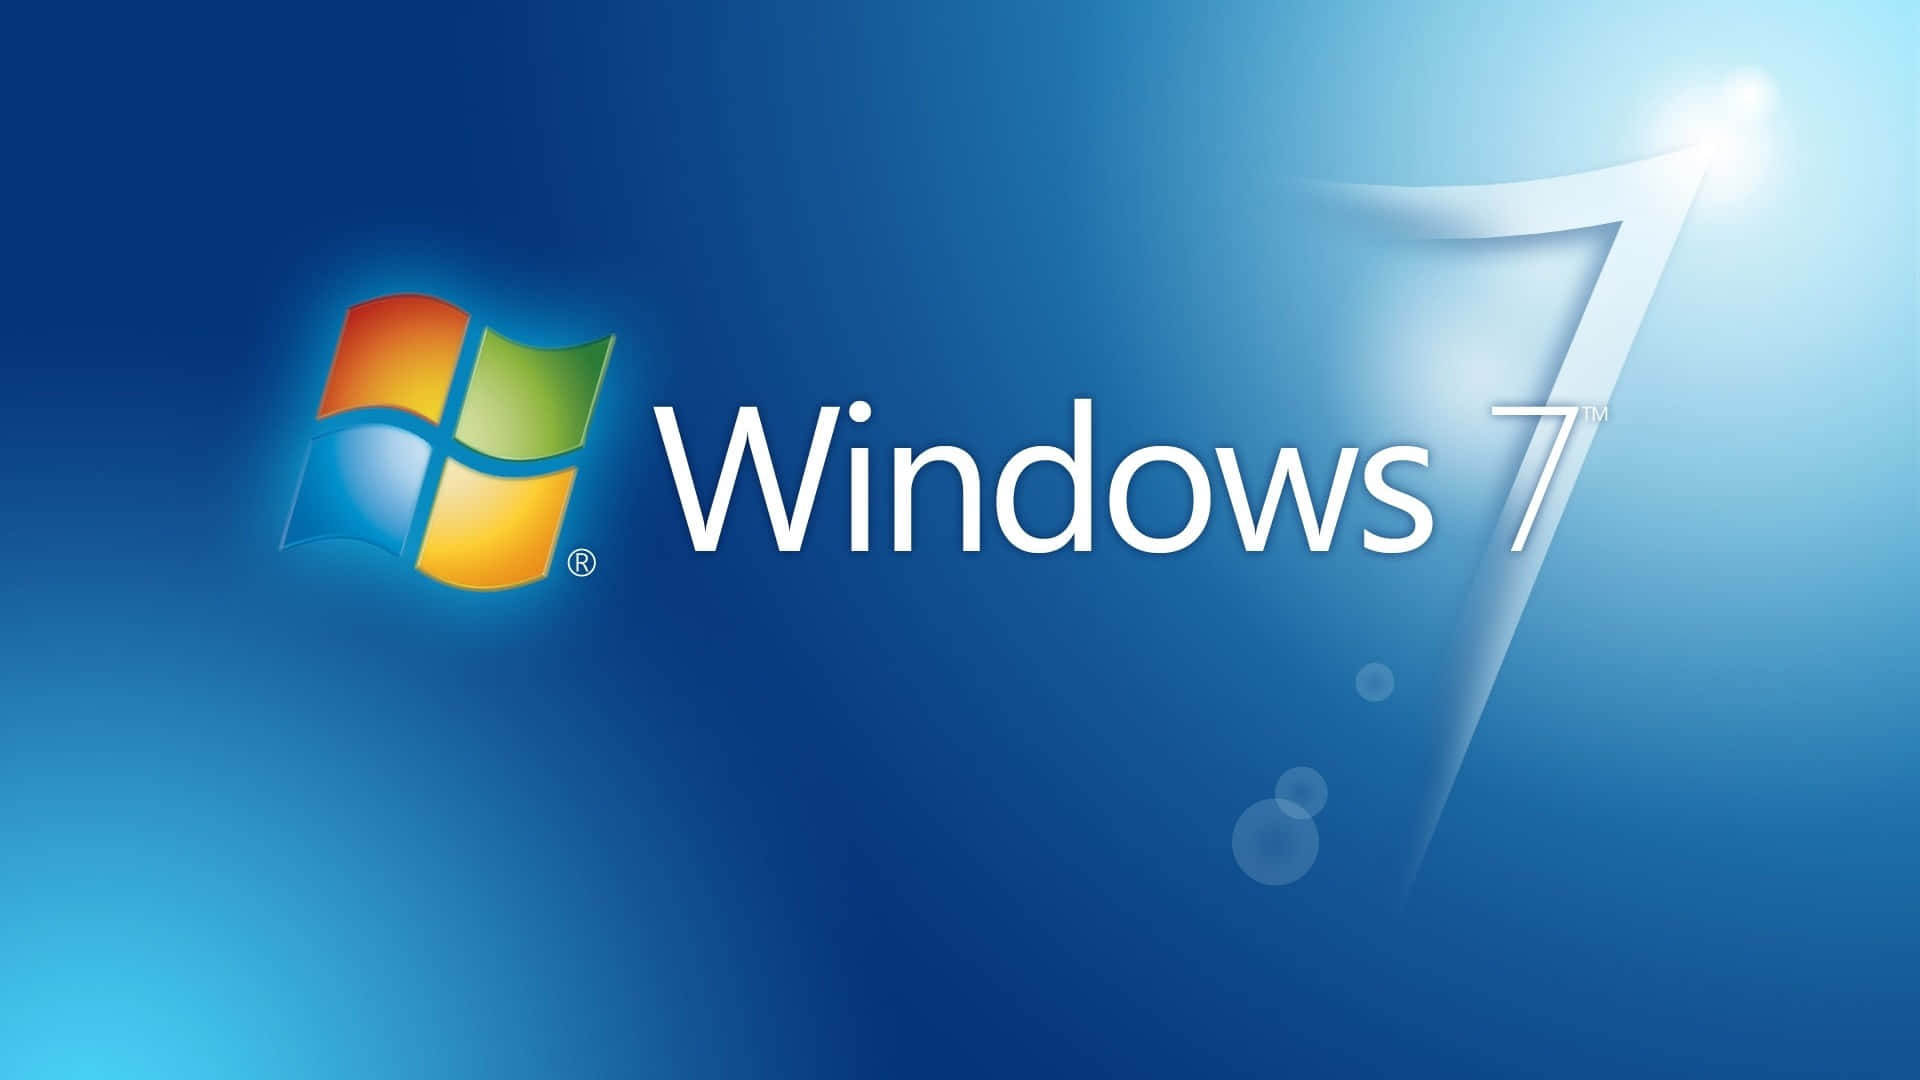 Logode Windows 7 Sobre Un Fondo Azul.